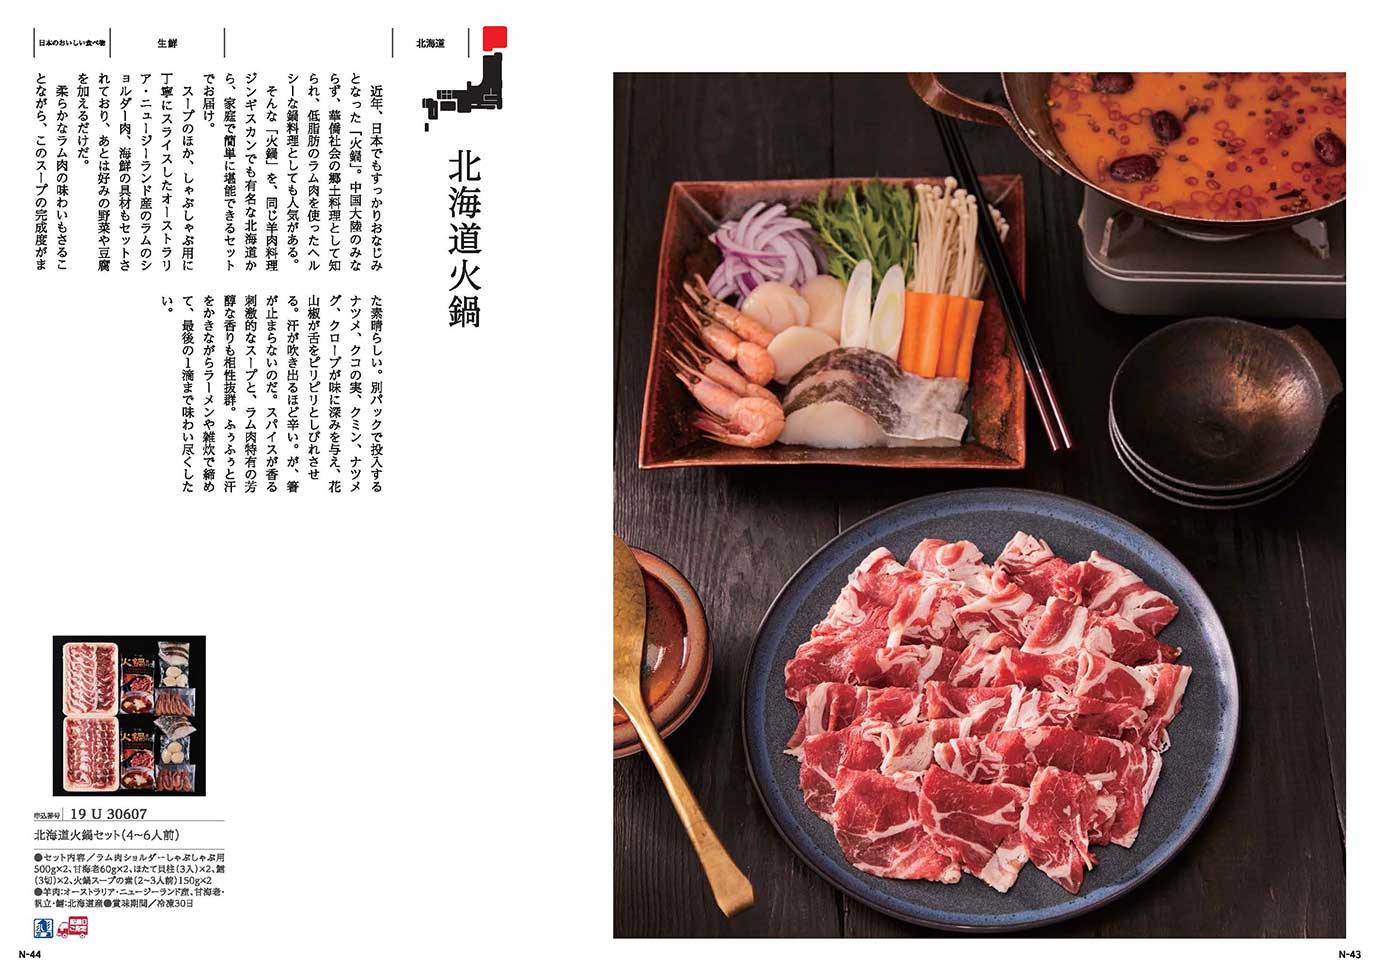 カタログギフト MADE in JAPAN with 日本のおいしい食べ物 MJ26+伽羅（きゃら）[カードタイプ]